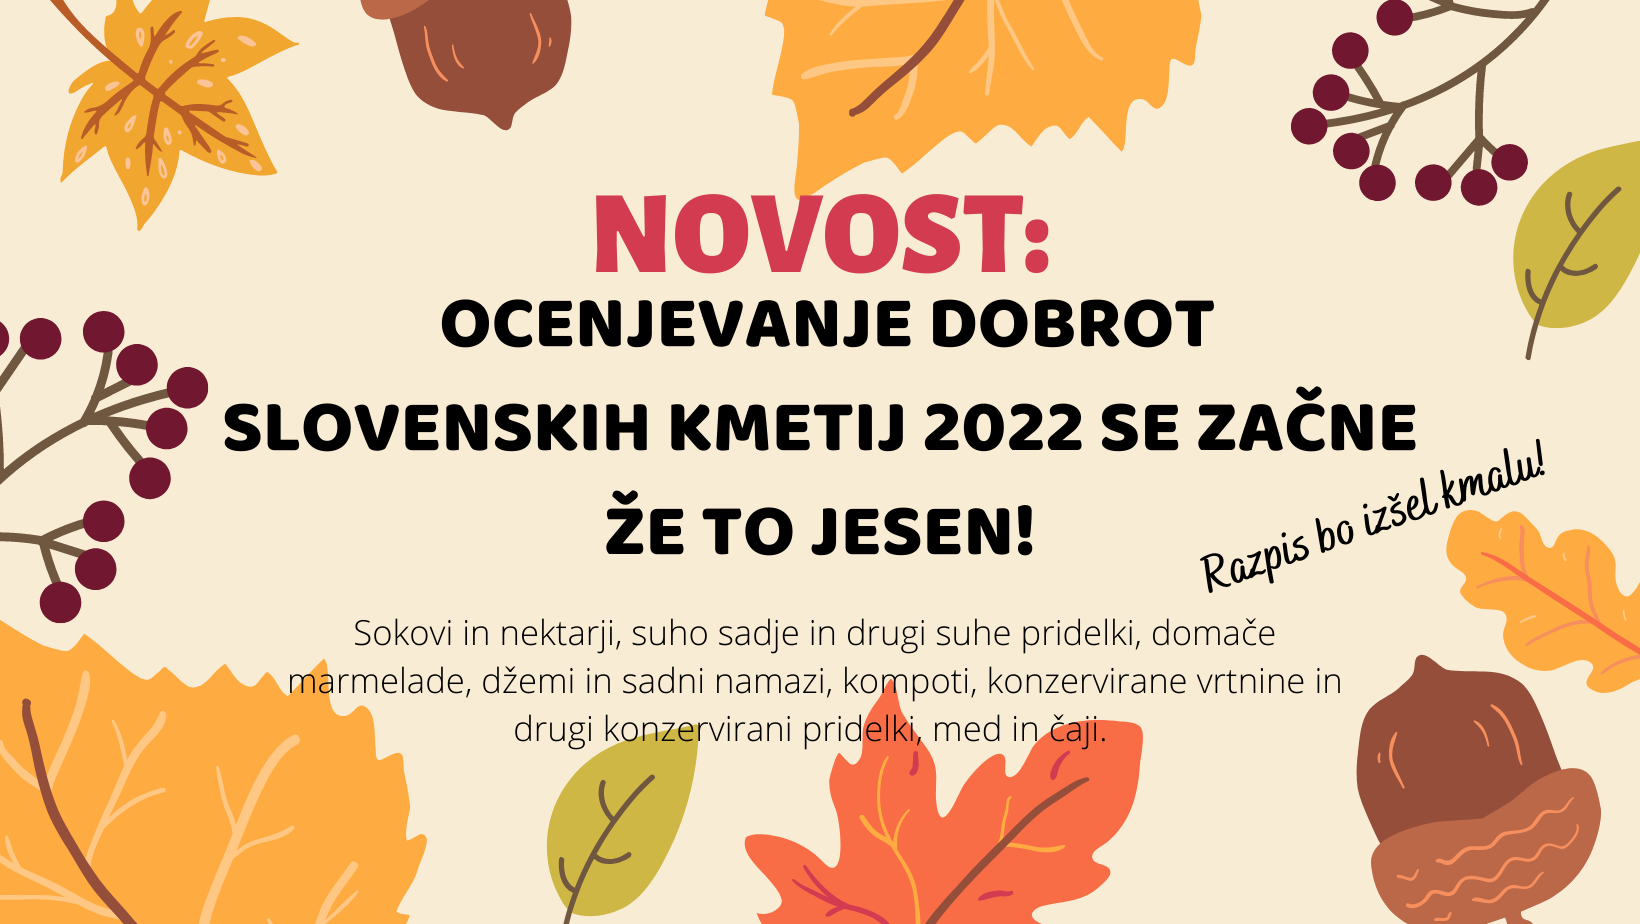 Ocenjevanje izdelkov Dobrot slovenskih kmetij za leto 2022 se začne že jeseni